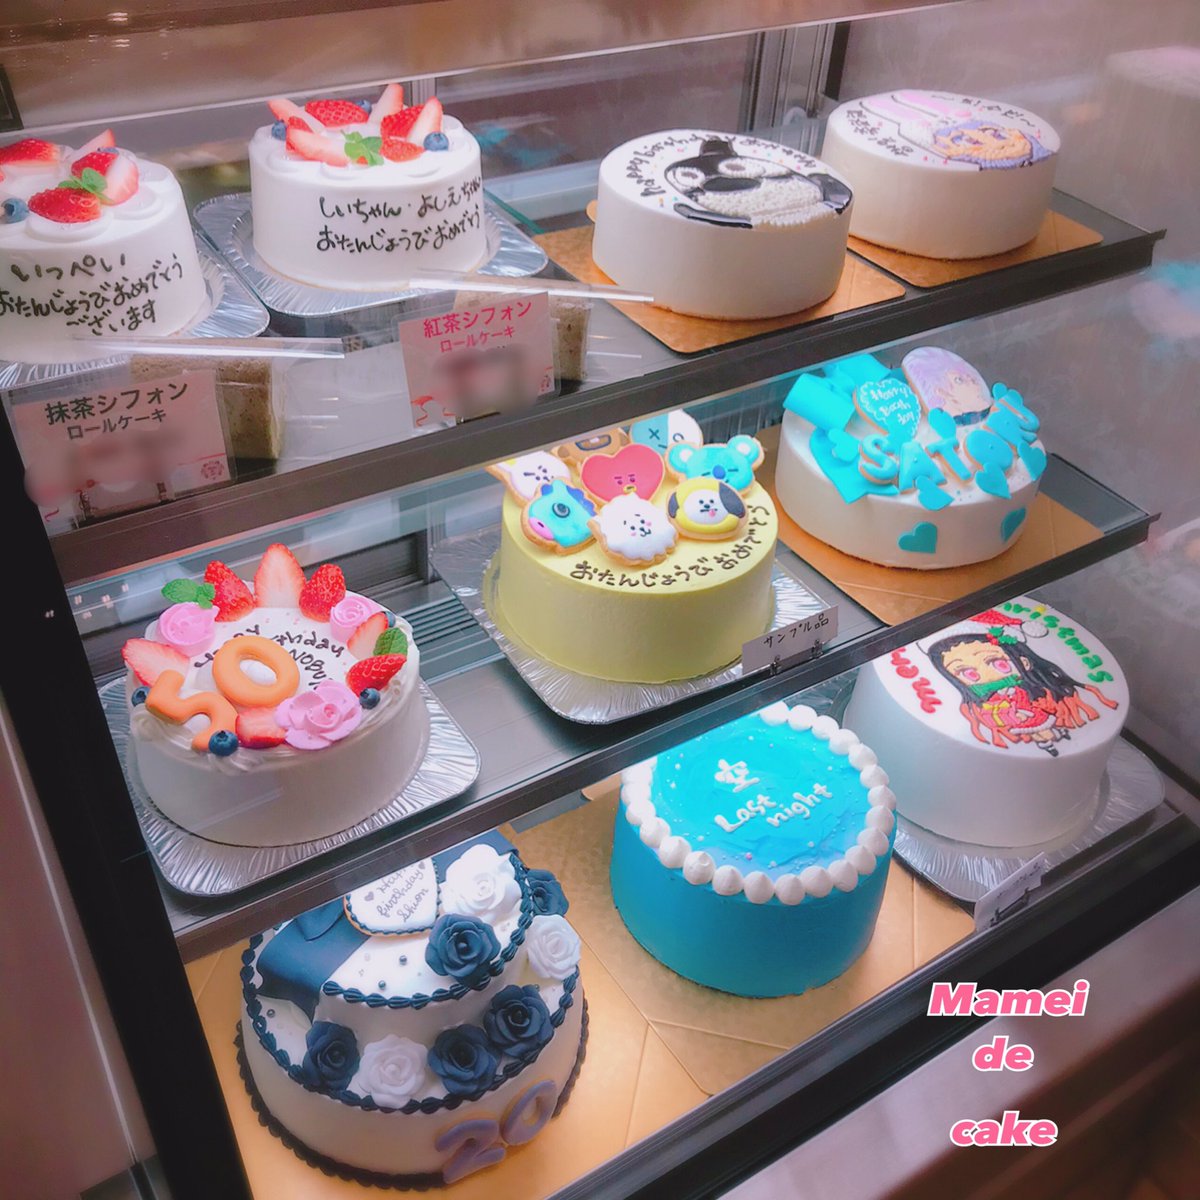 Mamei De Cake マーメイドケーキ 1月中のオーダーケーキのご予約締切期間について最新記事をupしました マーメイドケーキ アメブロ をご覧ください ケーキ オーダーケーキ オリジナルケーキ キャラクターケーキ 似顔絵ケーキ センイルケーキ